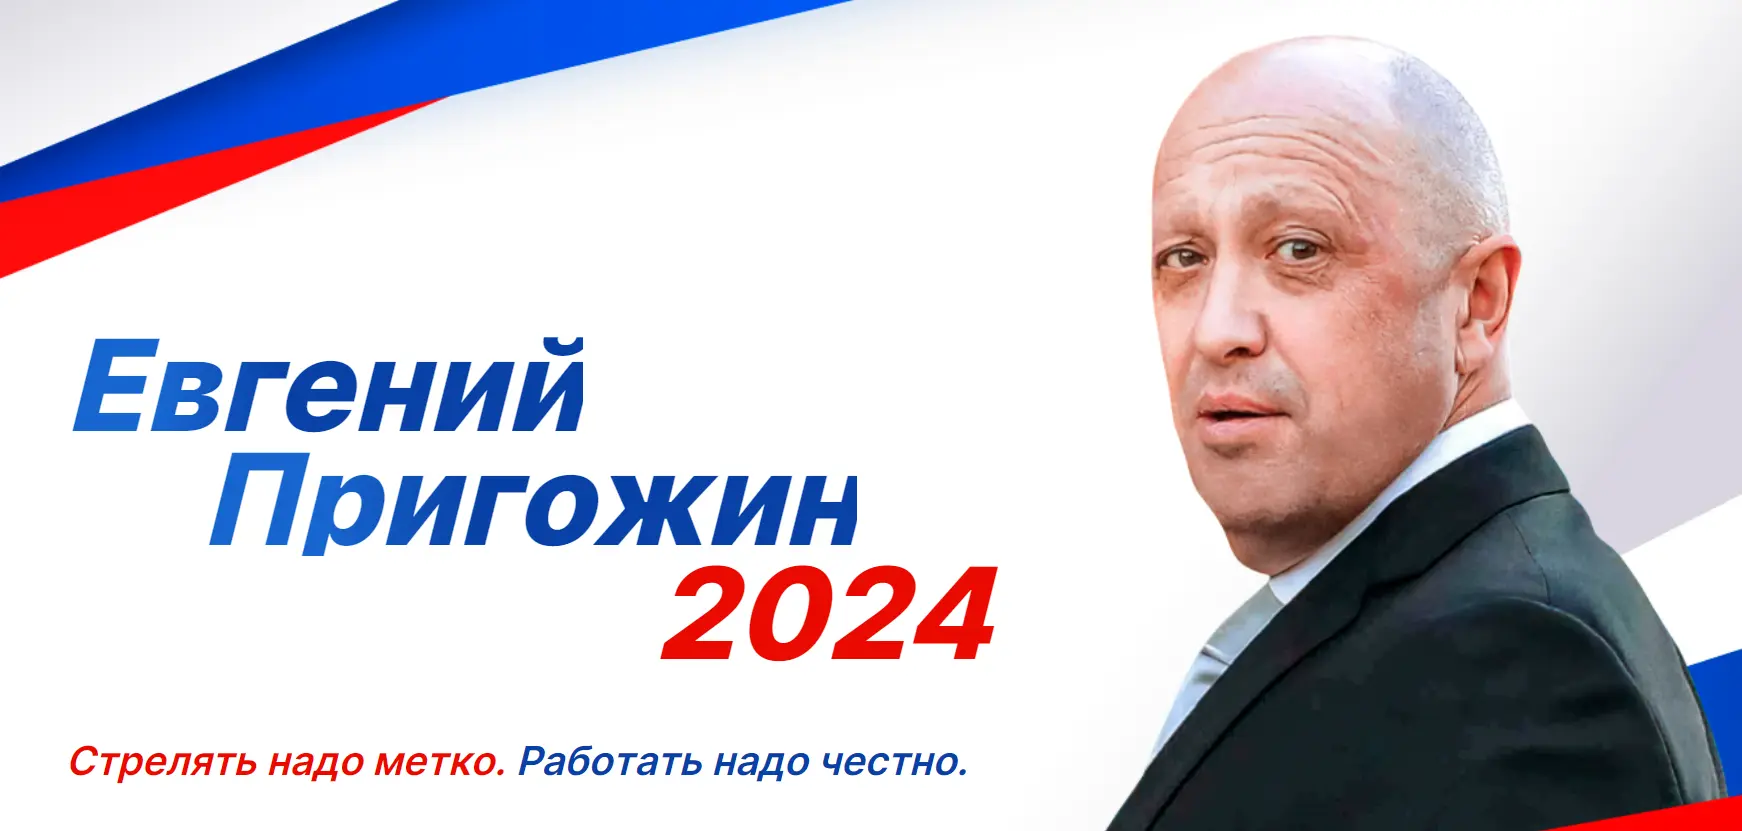 Программа новые люди на выборы 2024. Пригожин 2024 выборы плакат. Vibori rossii 2024. Предвыборные плакаты 2024.